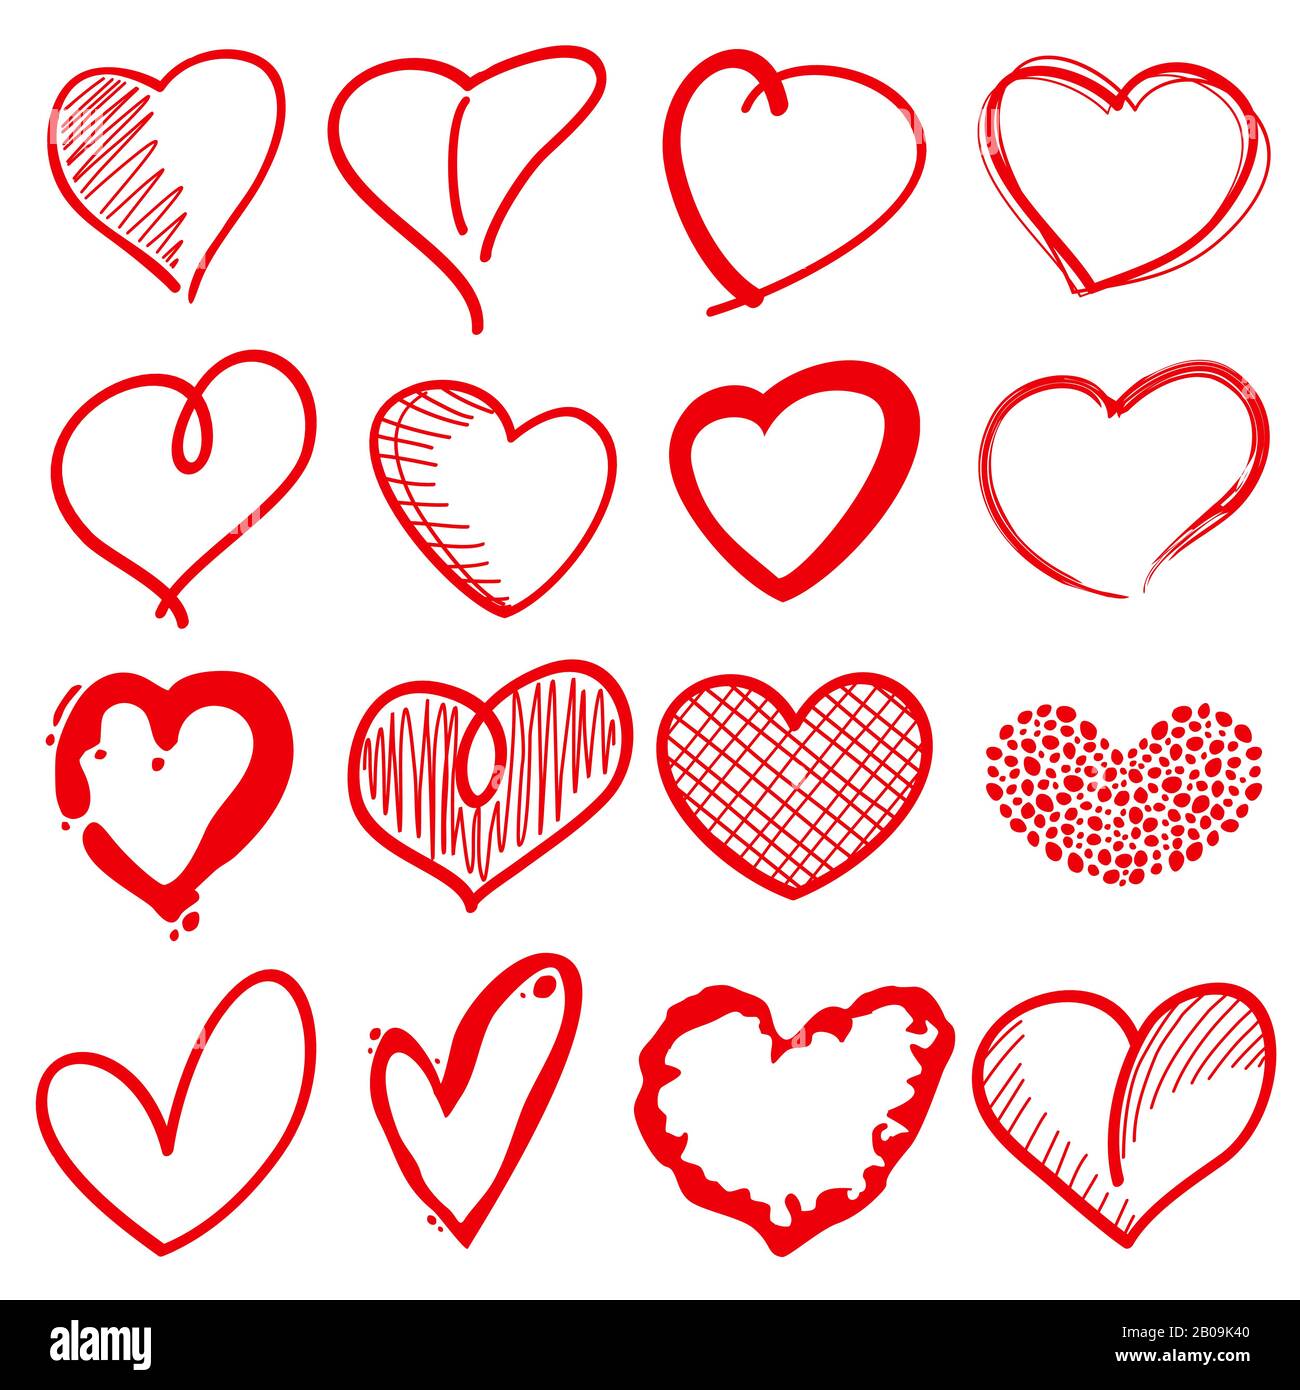 Forme di cuore disegnate a mano, romanticismo amore doodle segni vettoriali per le decorazioni di festa. Cuori rossi di schizzo, illustrazione del cuore di amore di decorazione Illustrazione Vettoriale